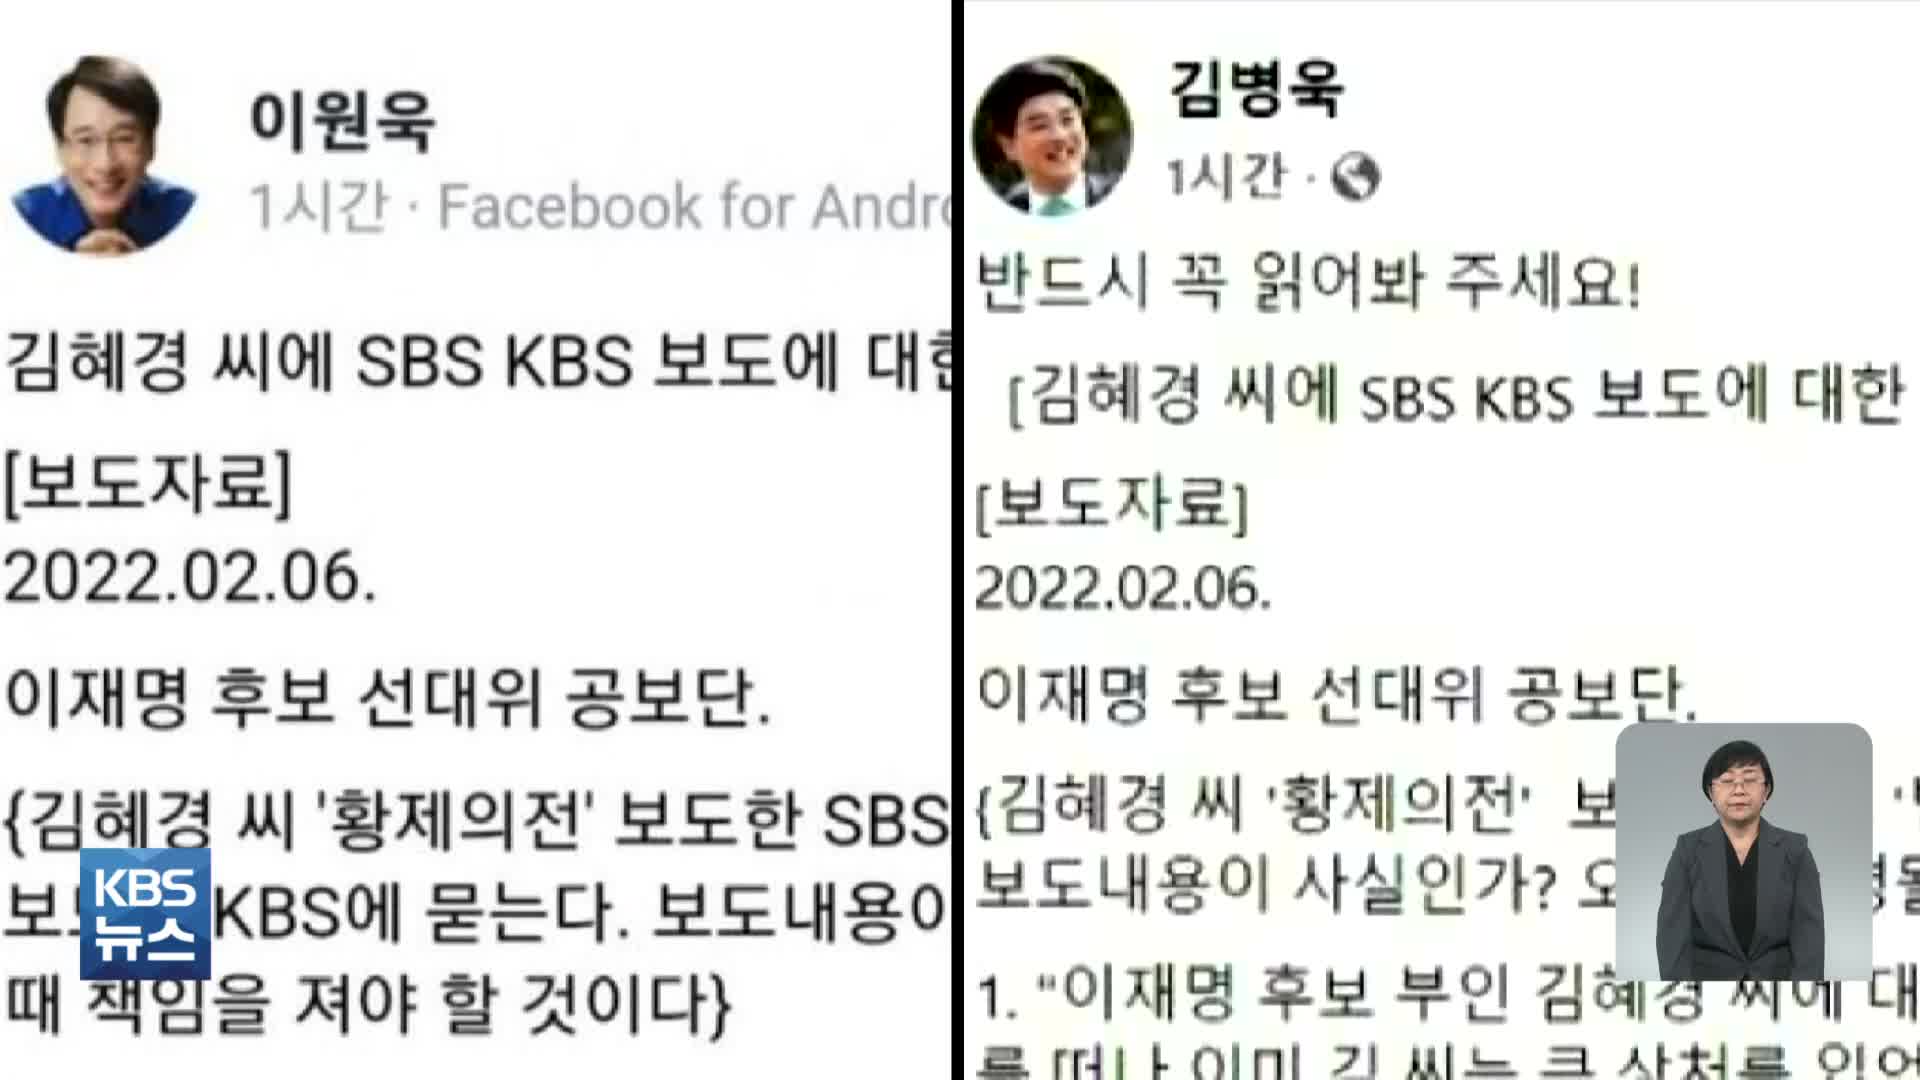 與 의원들, ‘김혜경 보도 책임 묻겠다’ 게시 후 삭제…내용도 ‘거짓’